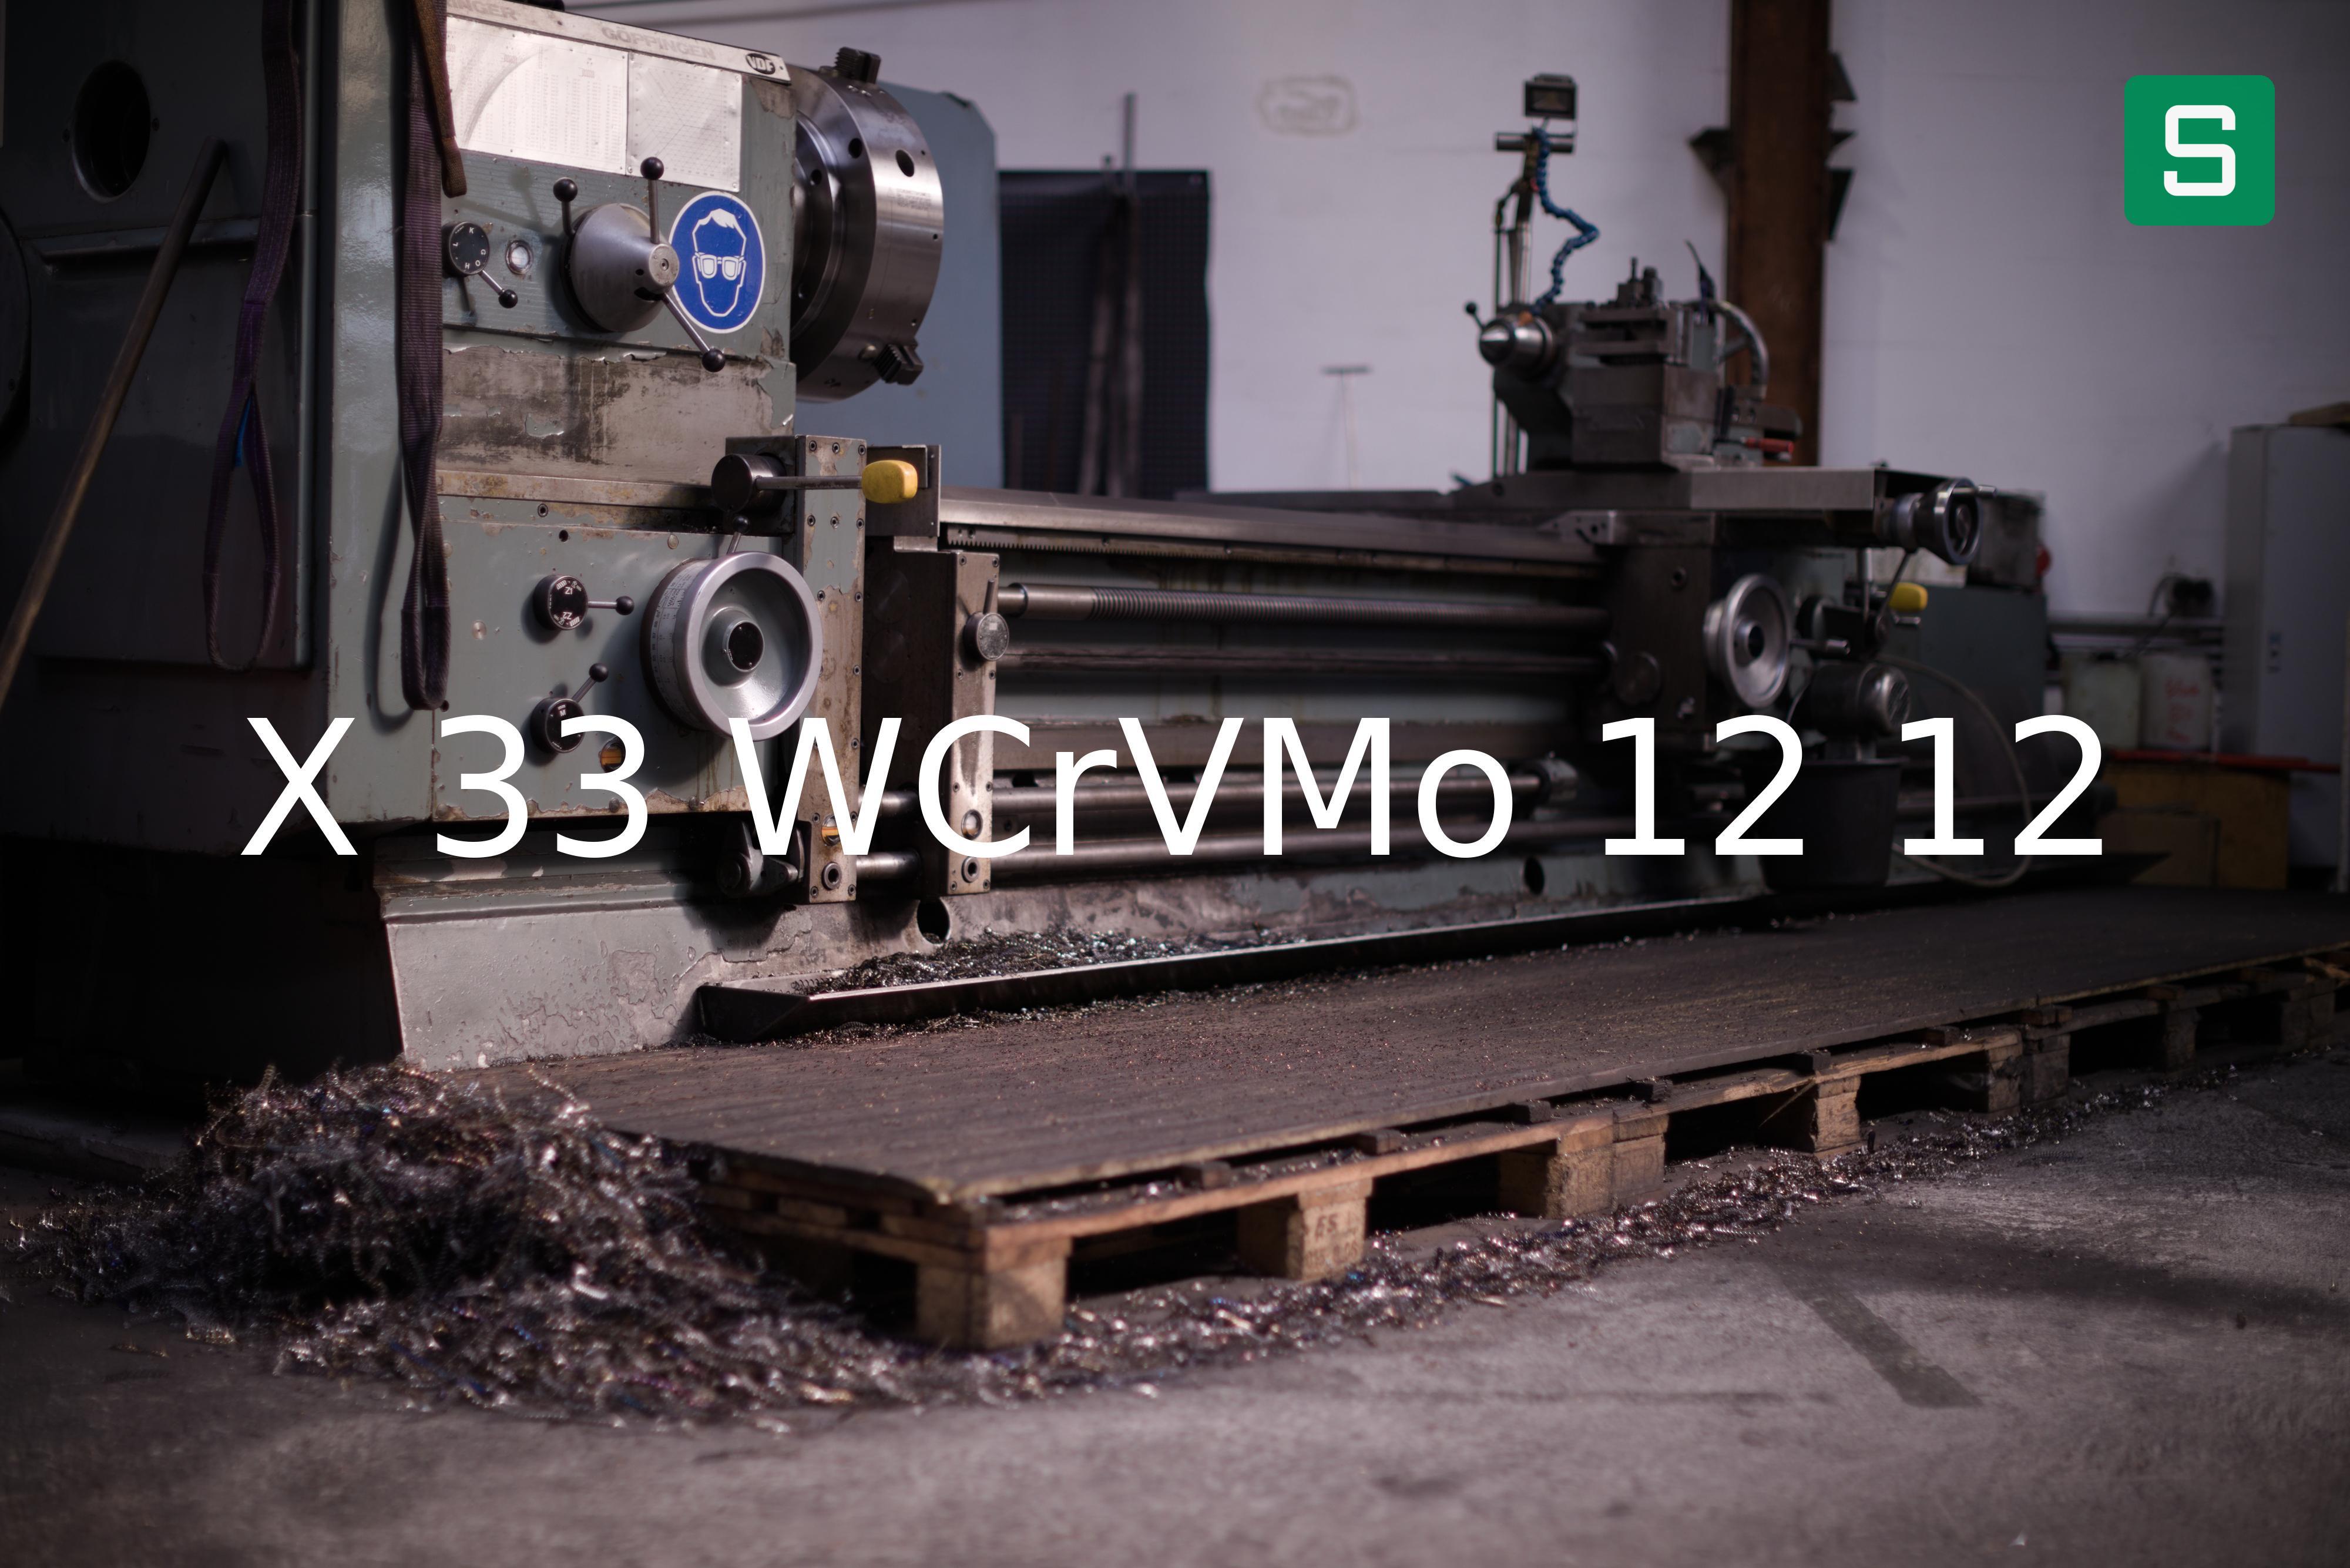 Steel Material: X 33 WCrVMo 12 12